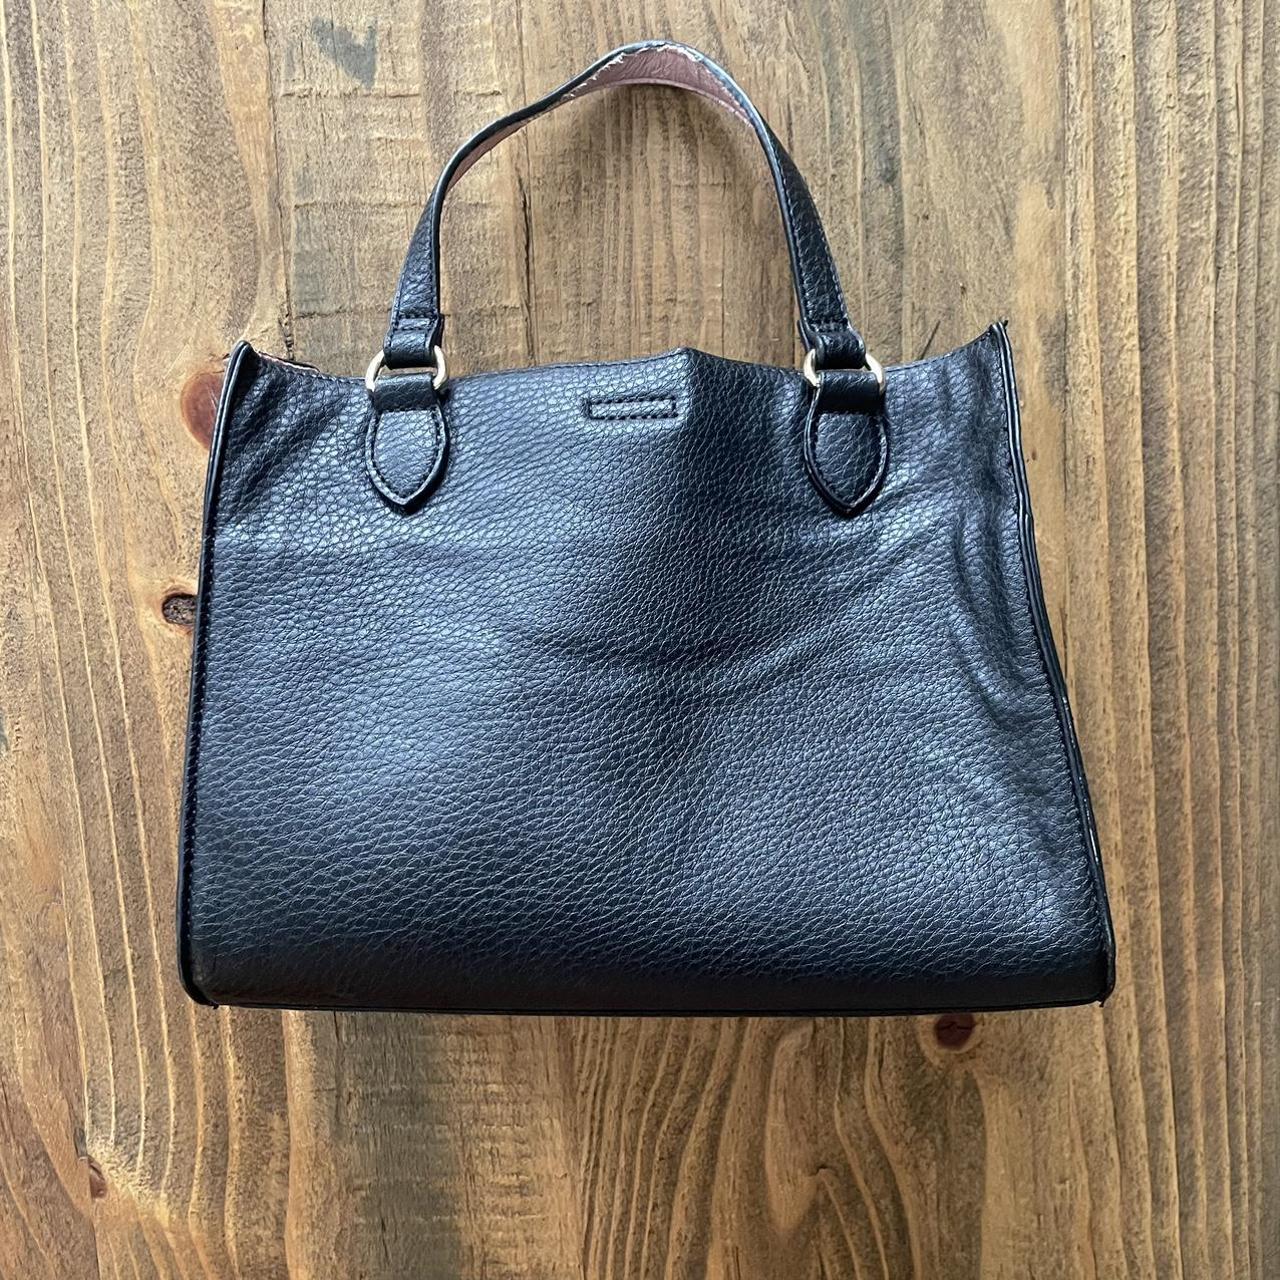 anne klein tote purse handbag white New | eBay